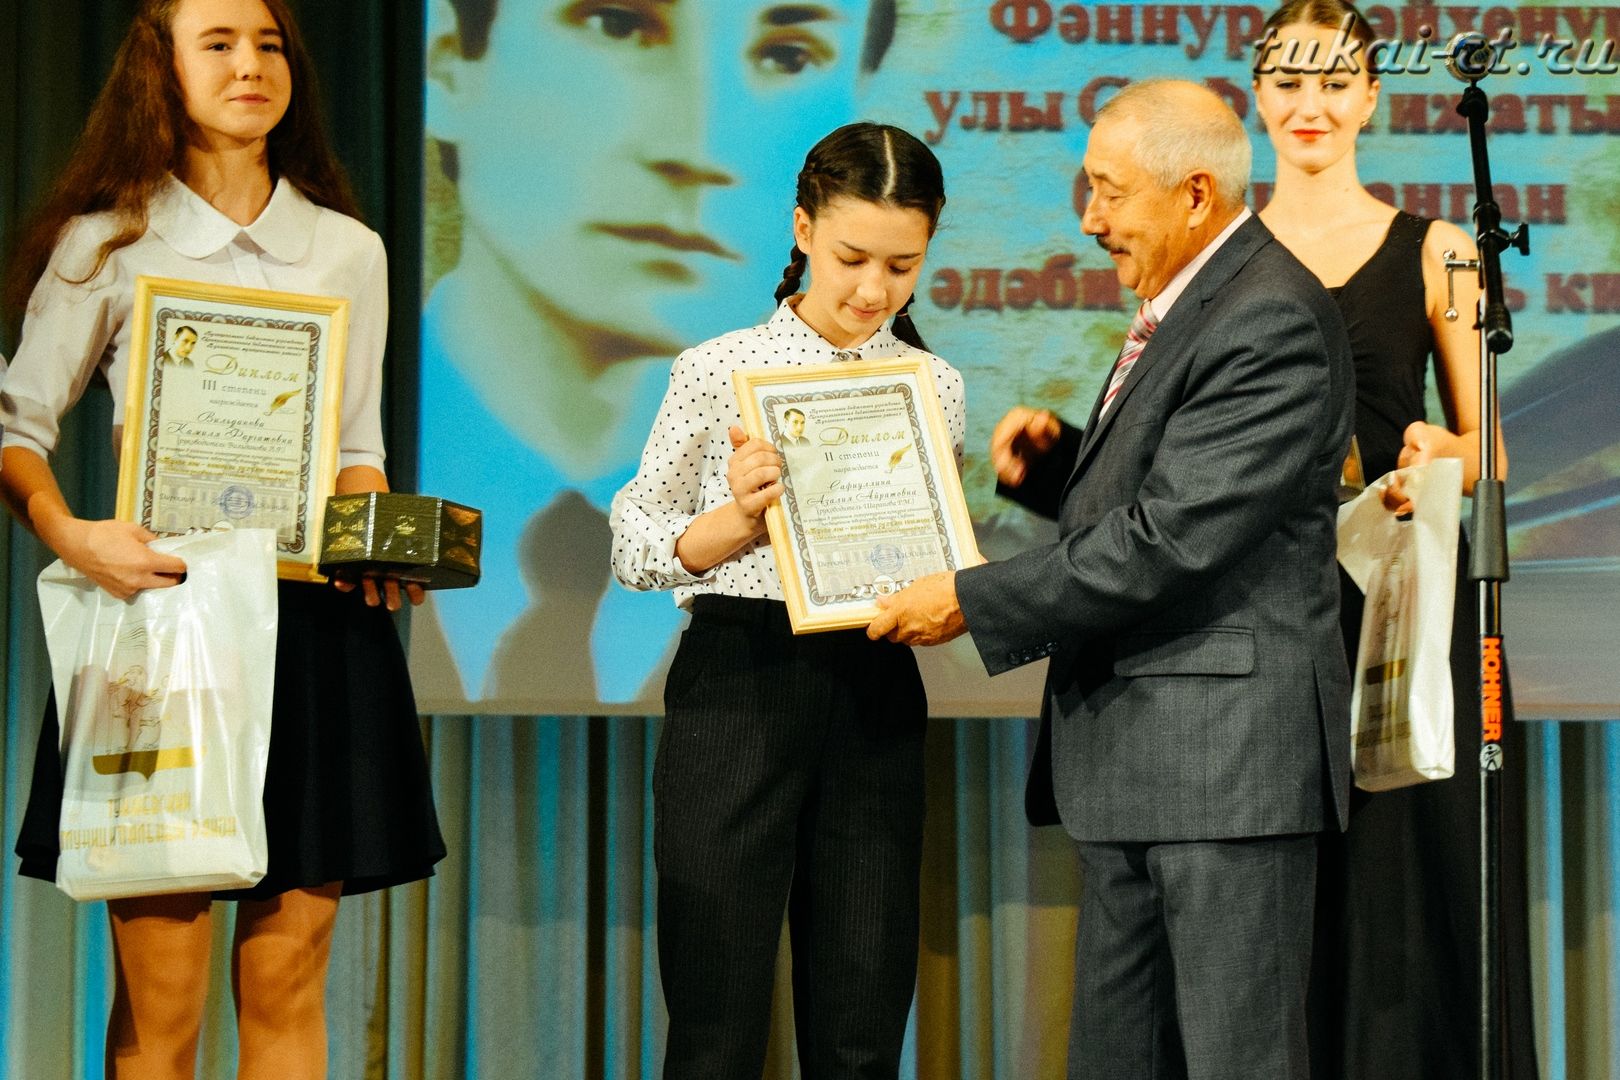 Литературно-музыкальный вечер памяти Фаннура Сафина прошел в Тукаевском районе ФОТО